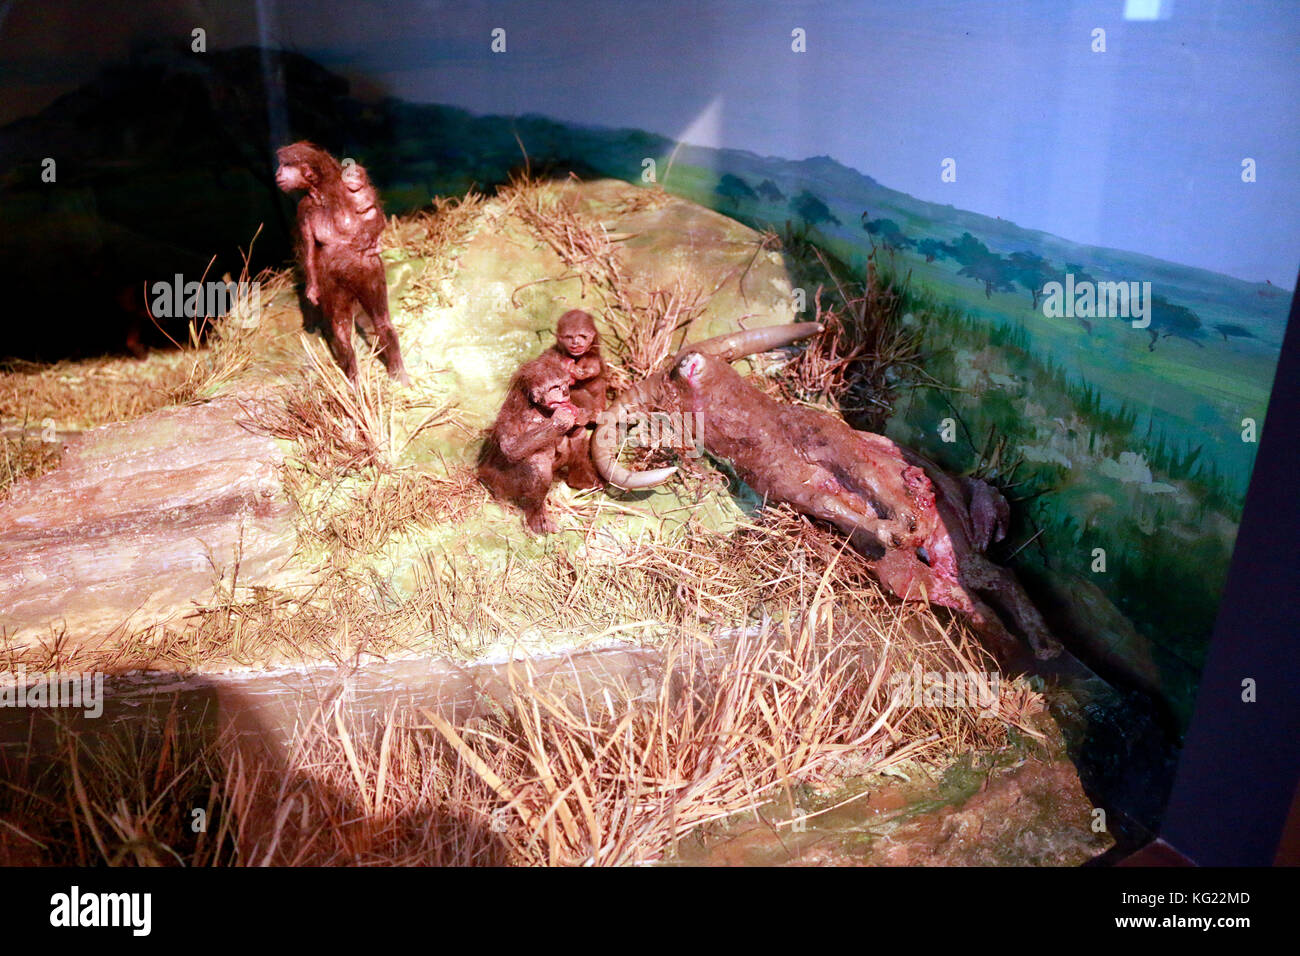 Menschen der steinzeit, evtl. neandertaler, Berlino. Foto Stock